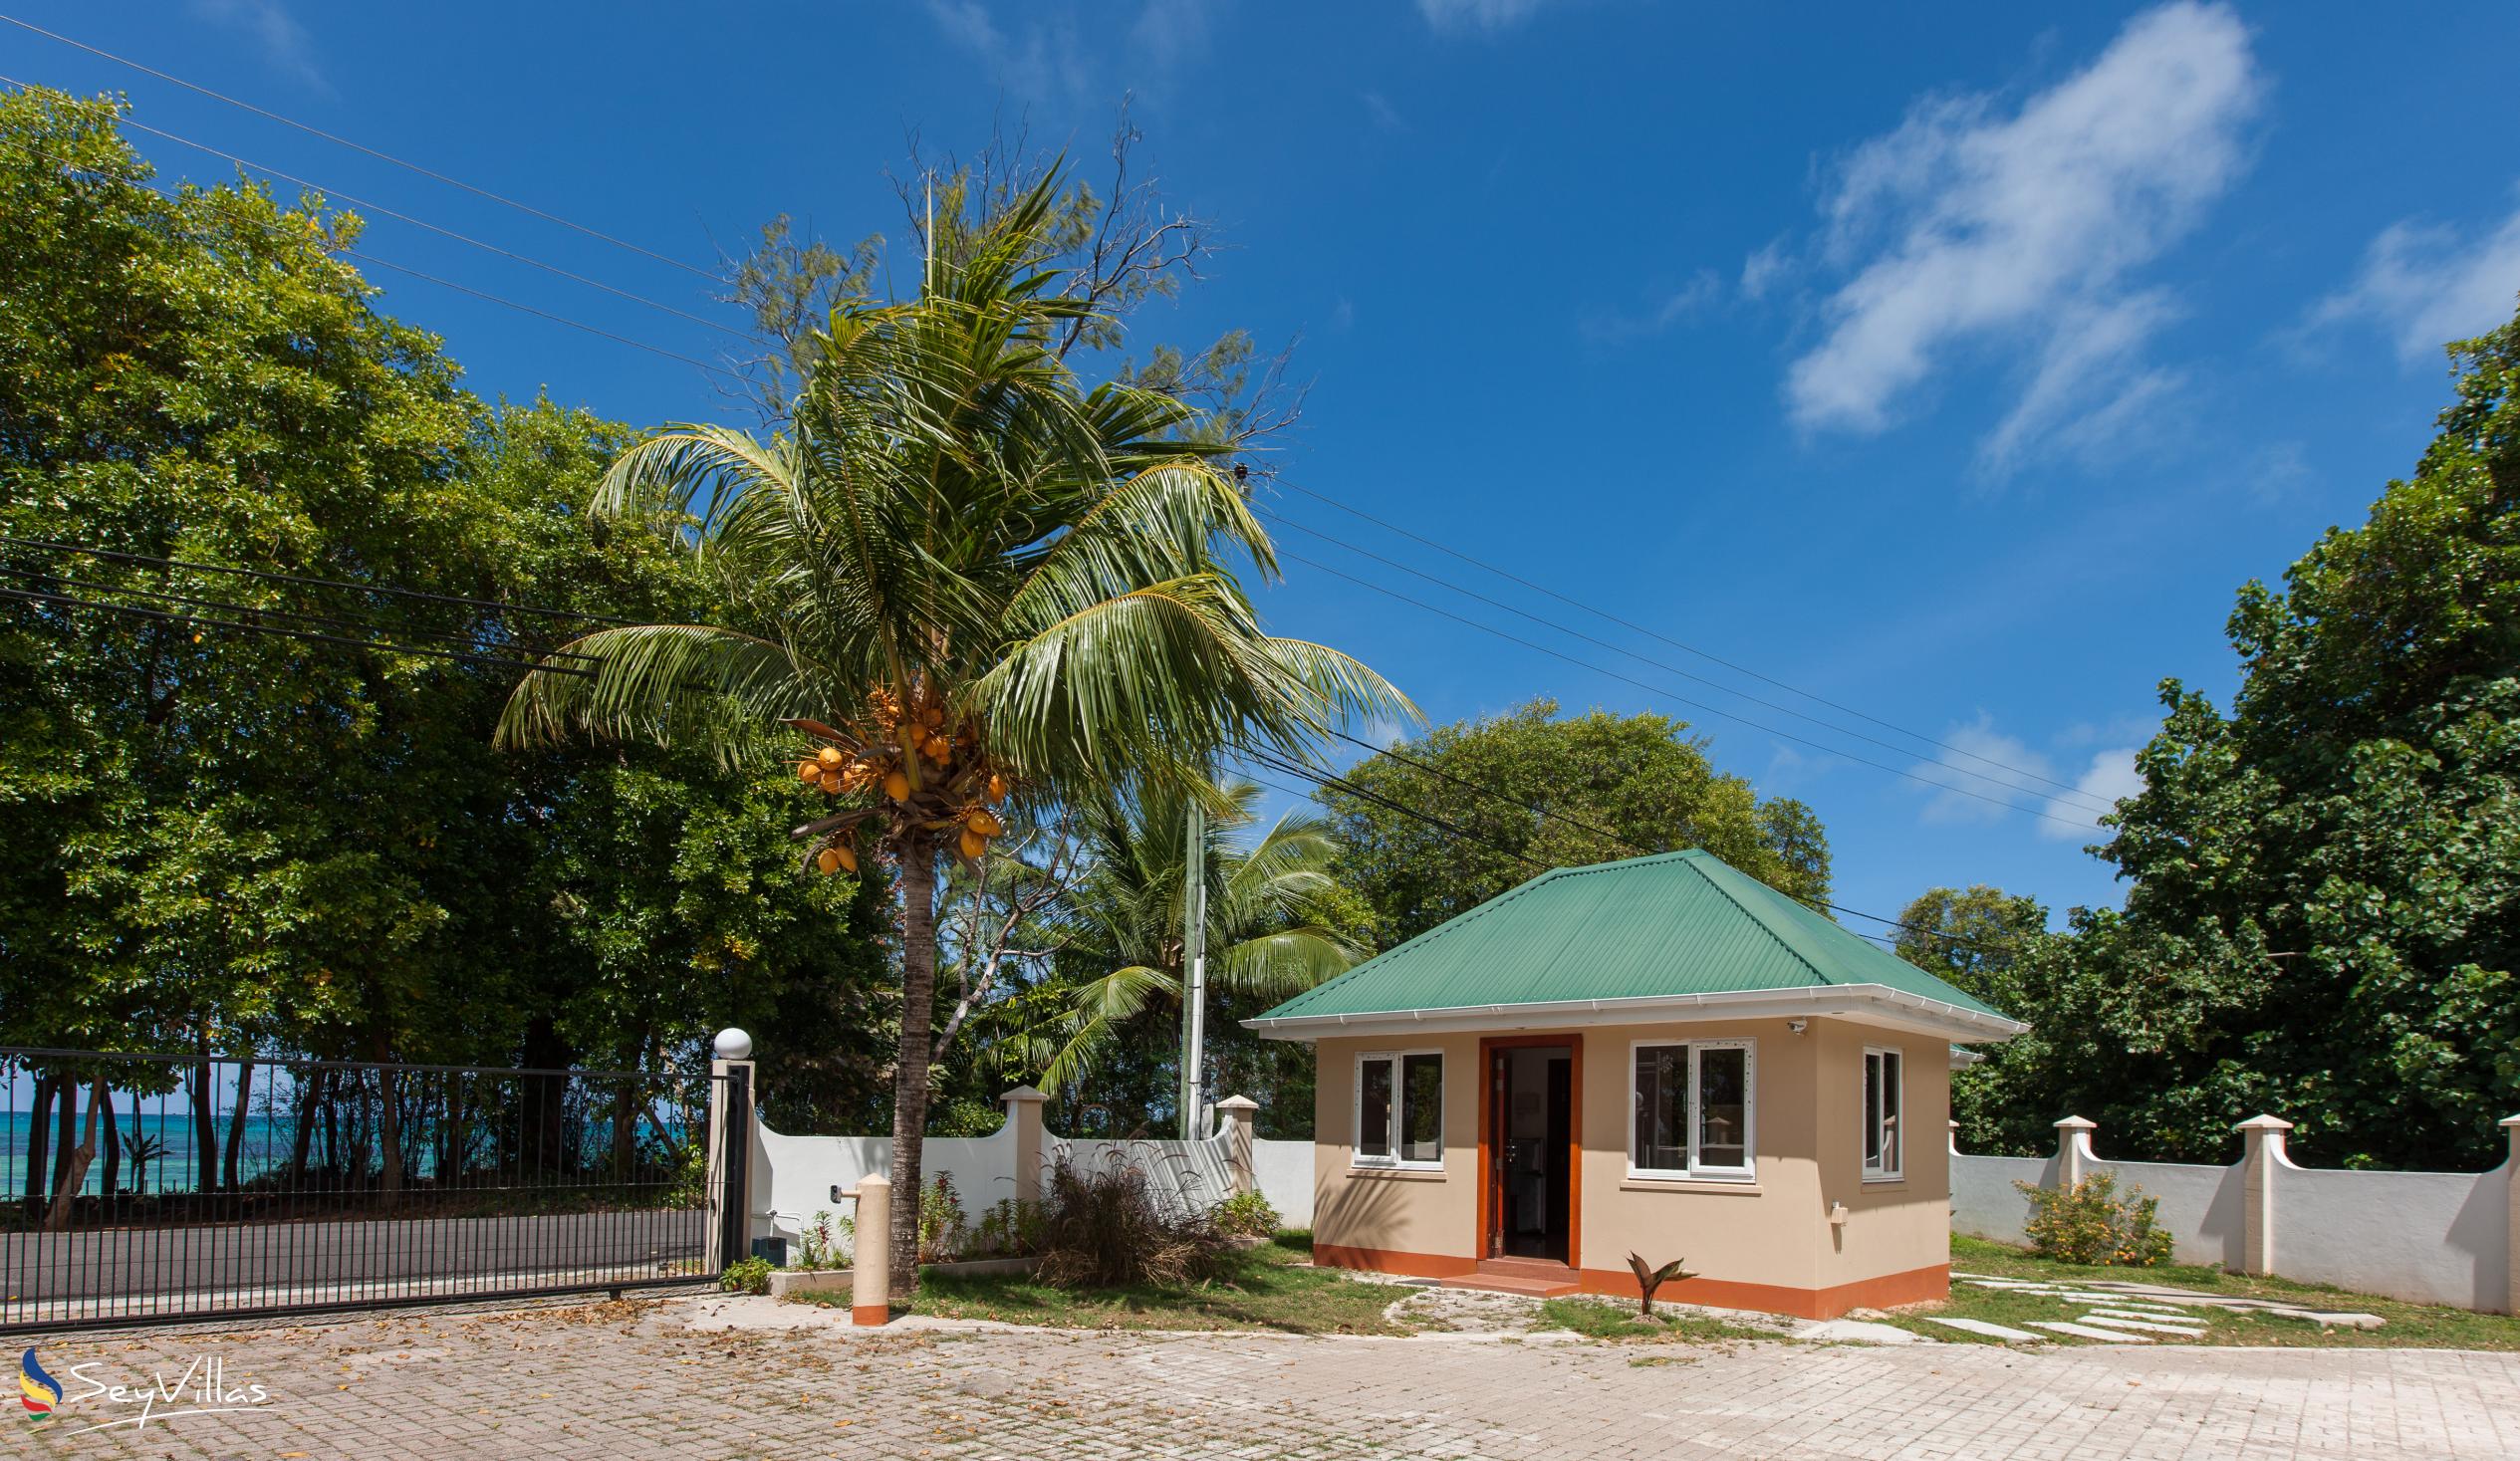 Foto 65: YASAD Luxury Beach Residence - Monolocale en suite con 1 camera da letto - Praslin (Seychelles)